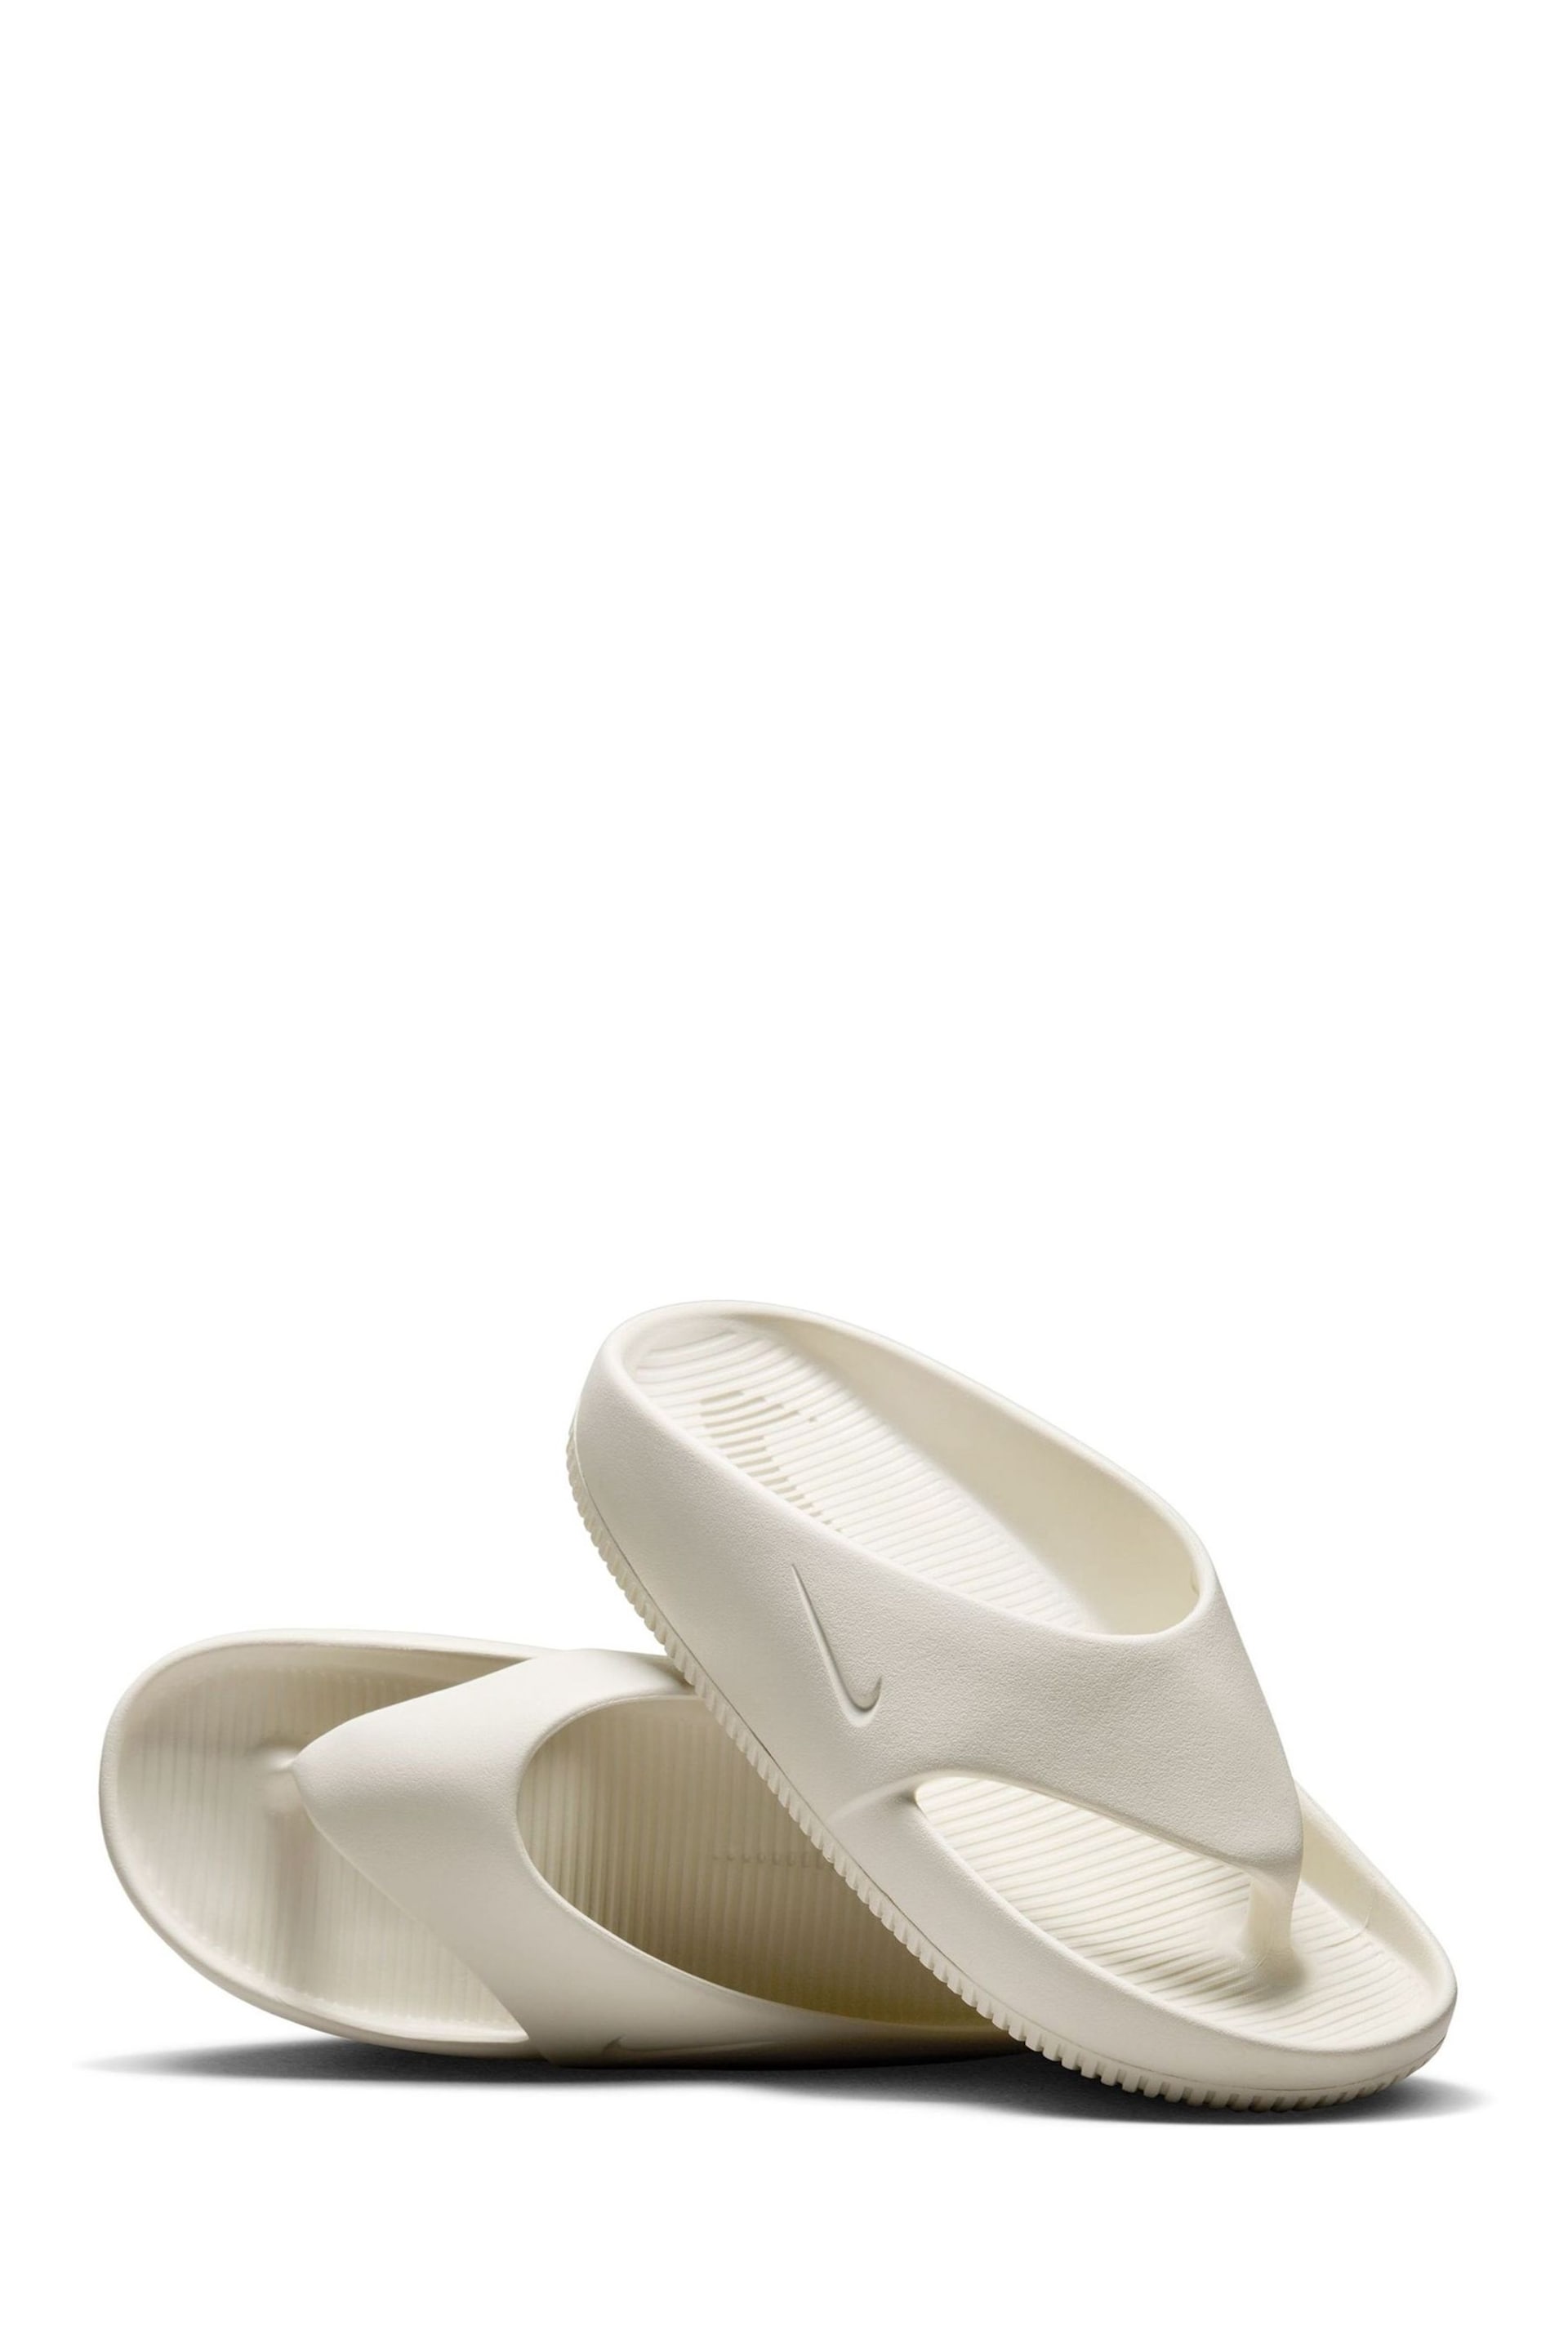 Nike White Calm Flip Flops - Image 4 of 10